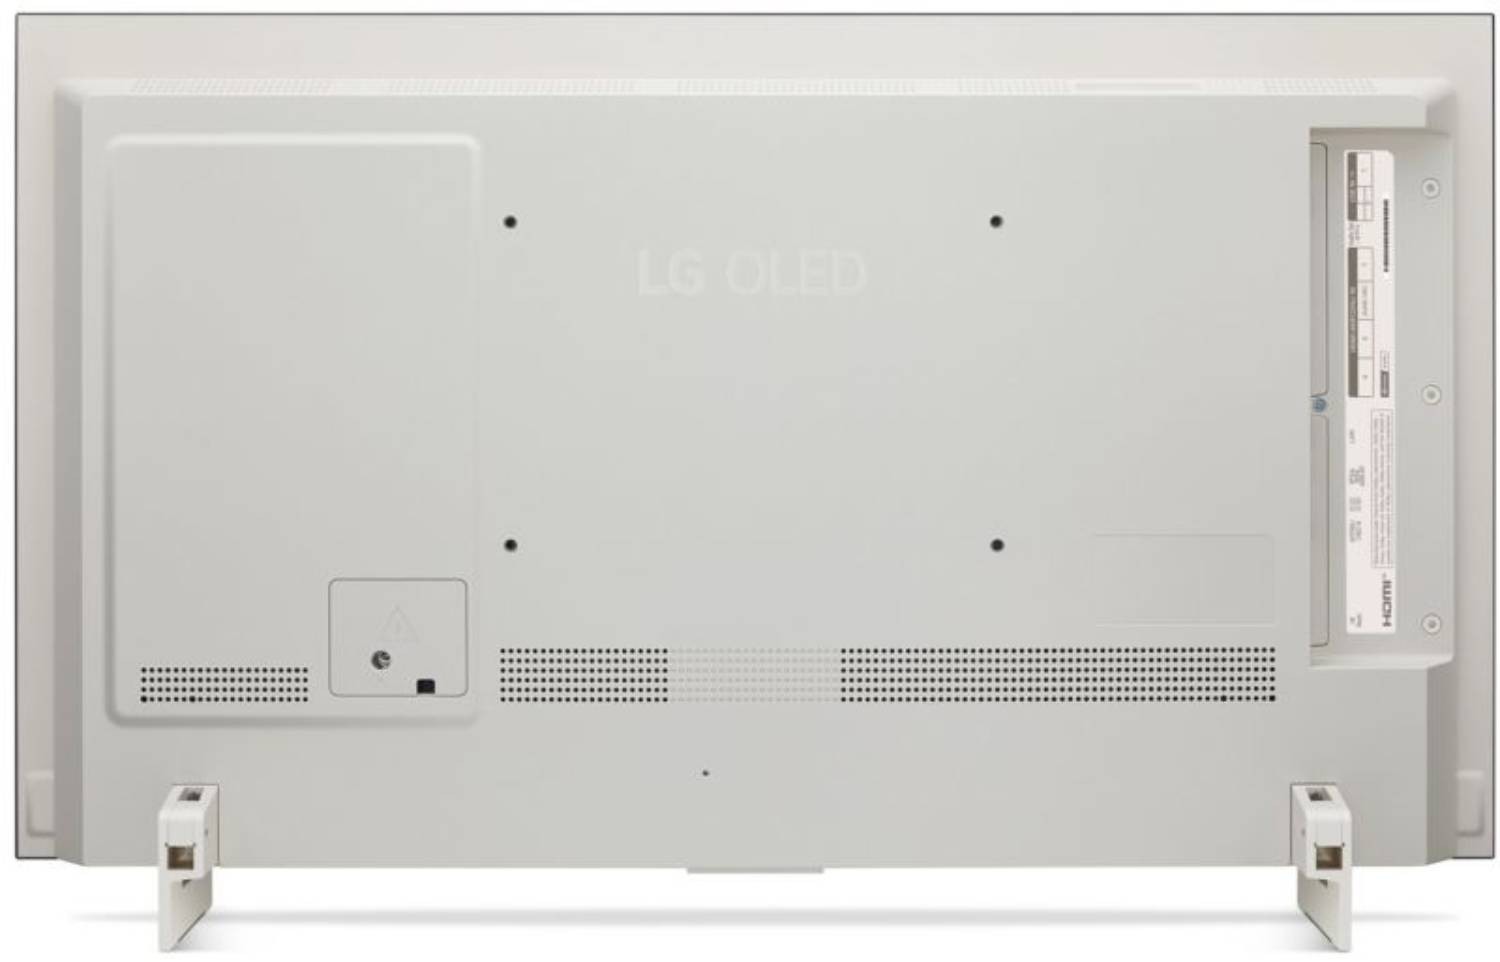 LG TV OLED 4K 106 cm  - OLED42C26